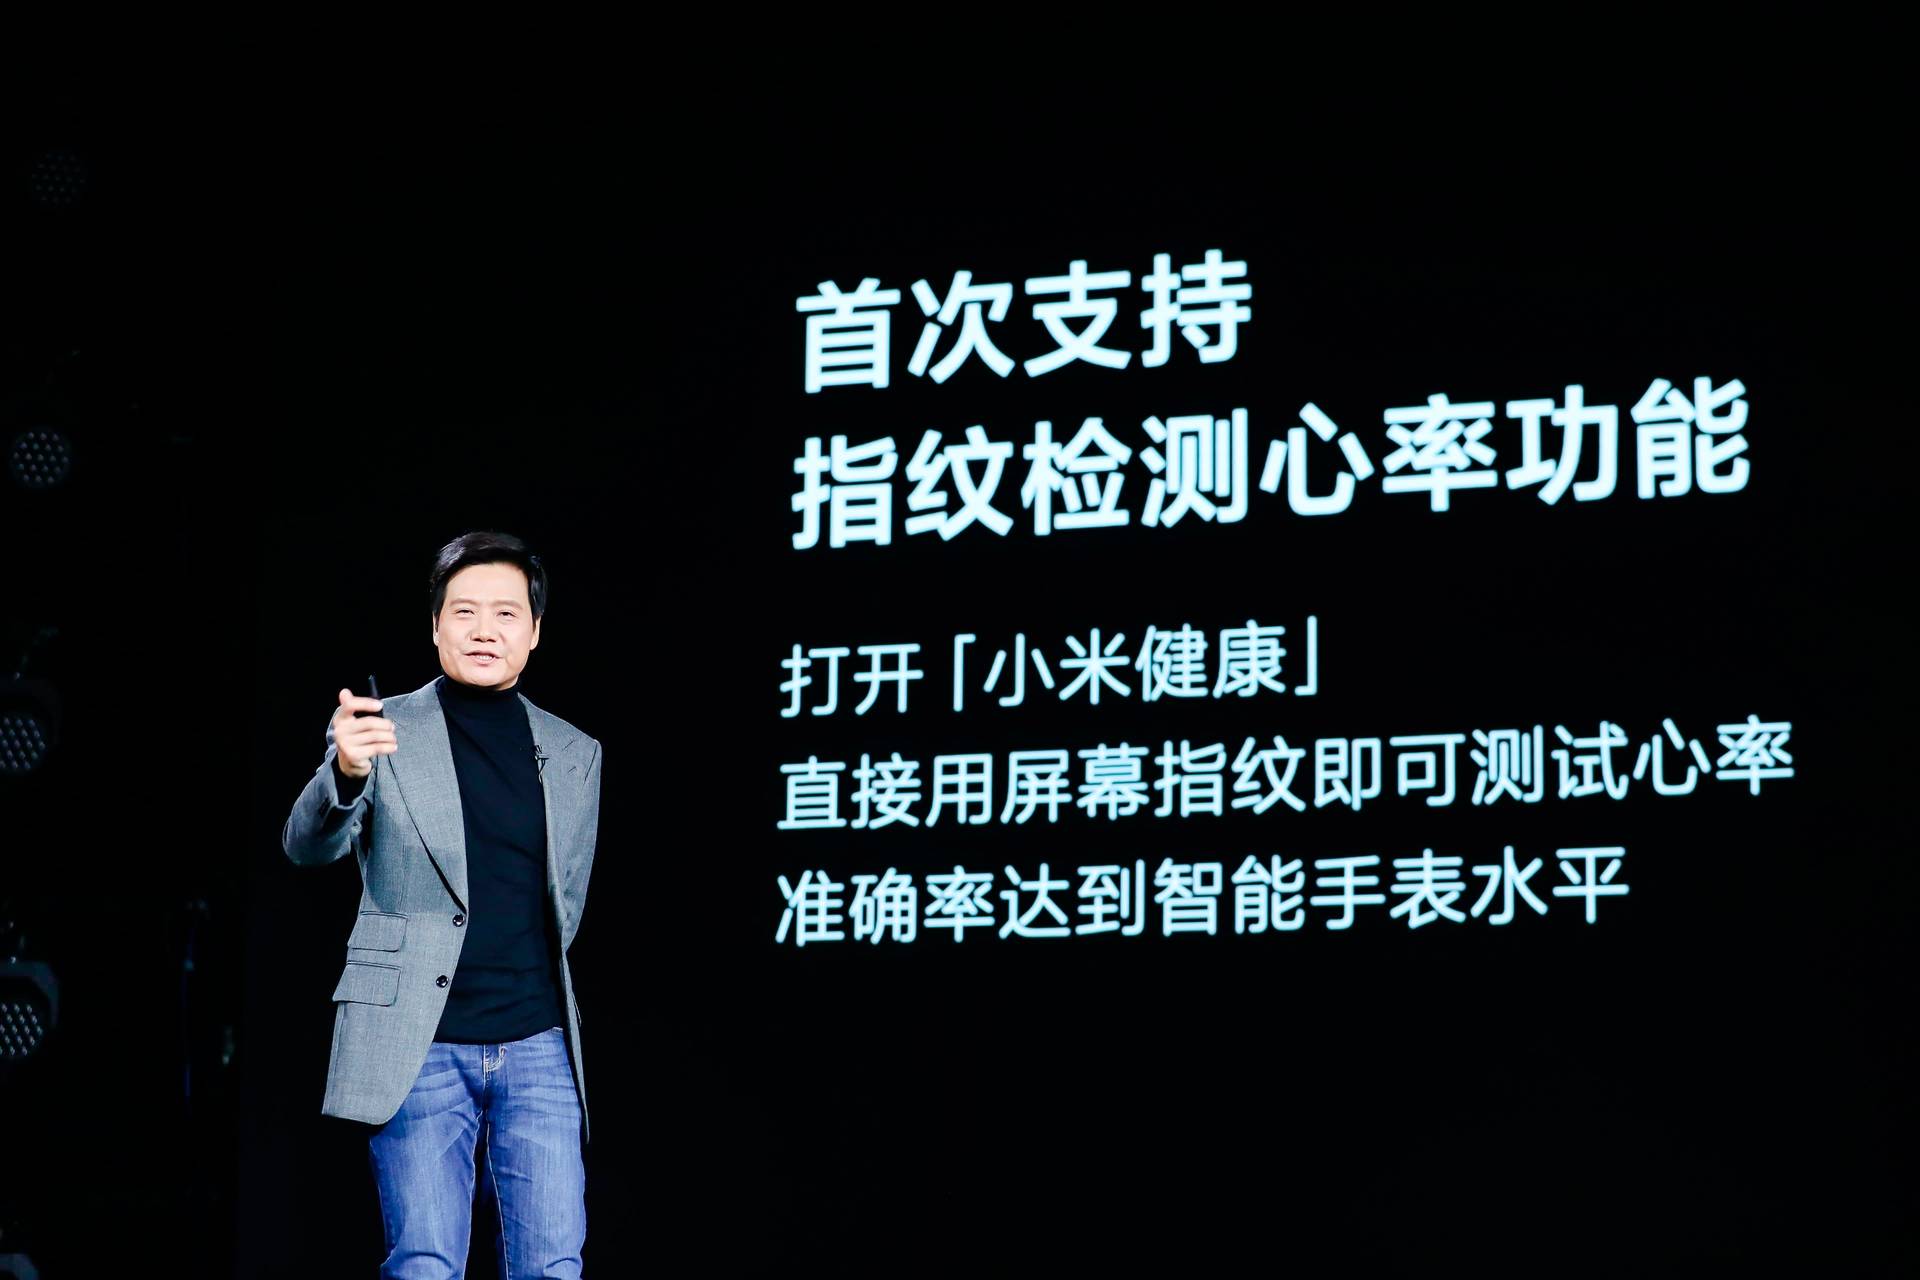 2421609161711 .pic hd - Conferenza Xiaomi Mi 11: Mi 11 offre le prestazioni più forti e lo schermo migliore, MIUI 12.5 è il corpo completo